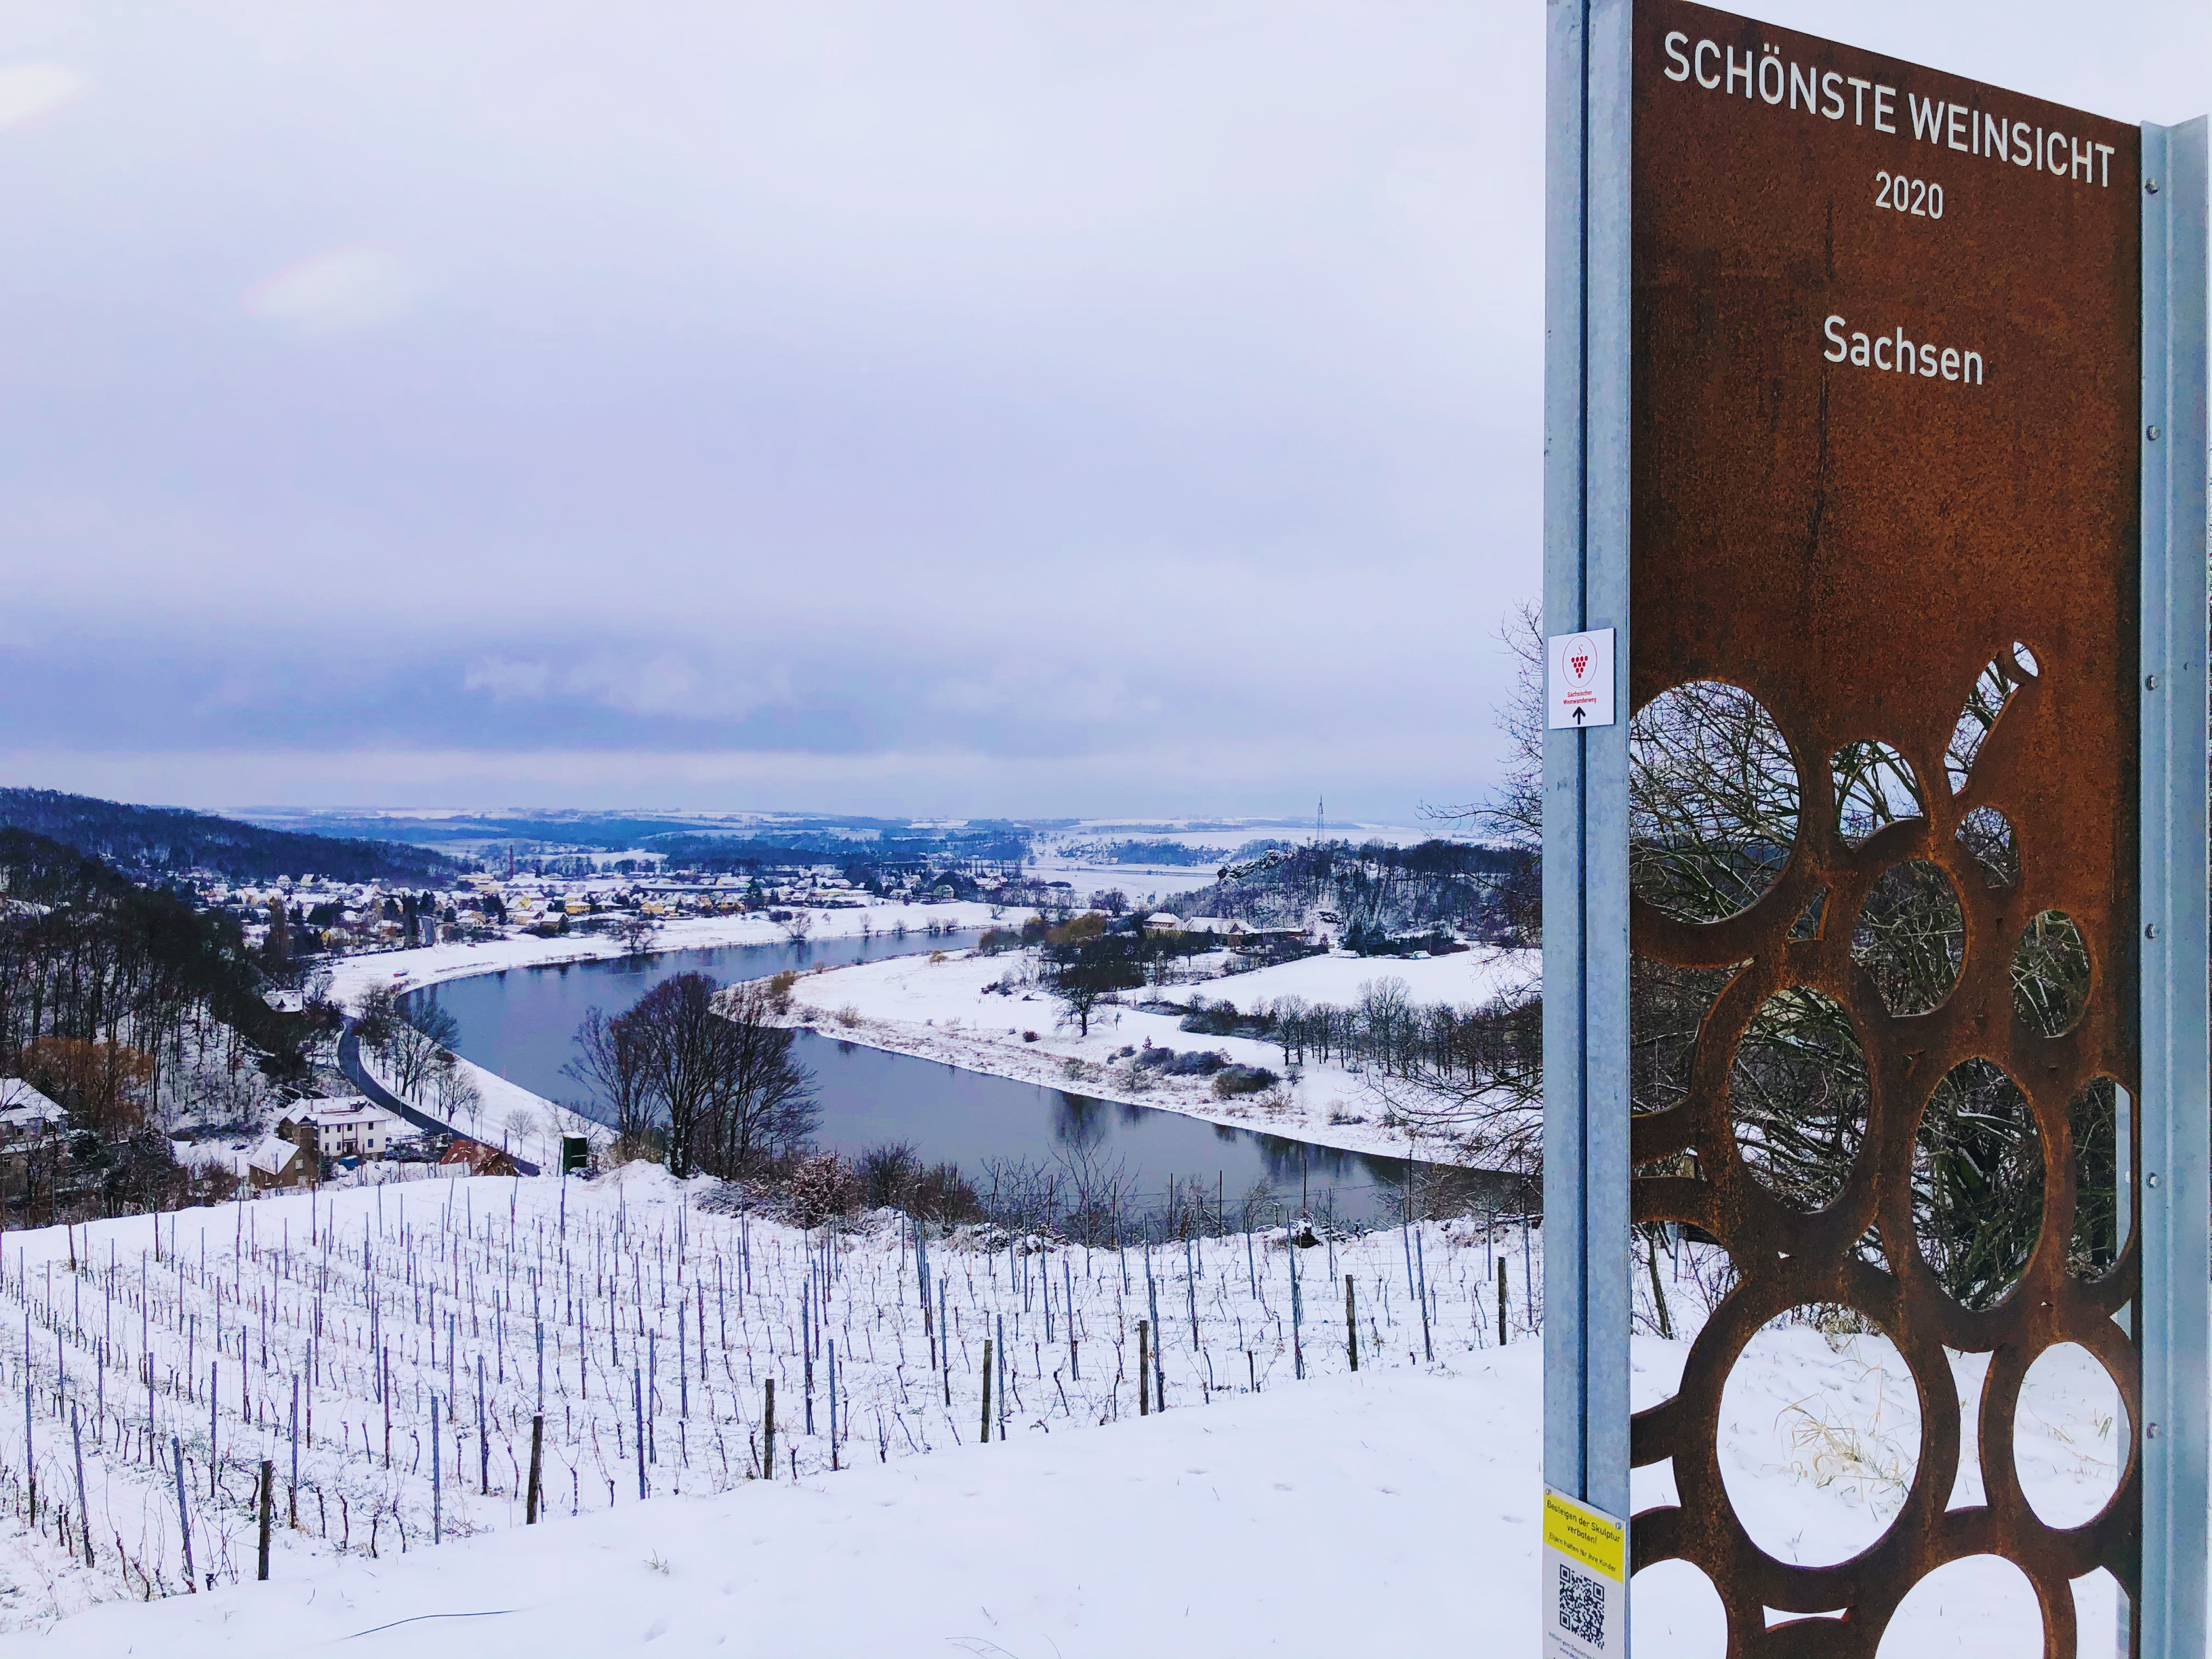 Winter Diesbar-Seußlitz Schönste Weinsicht 2020 Weingut Lehmann.JPG